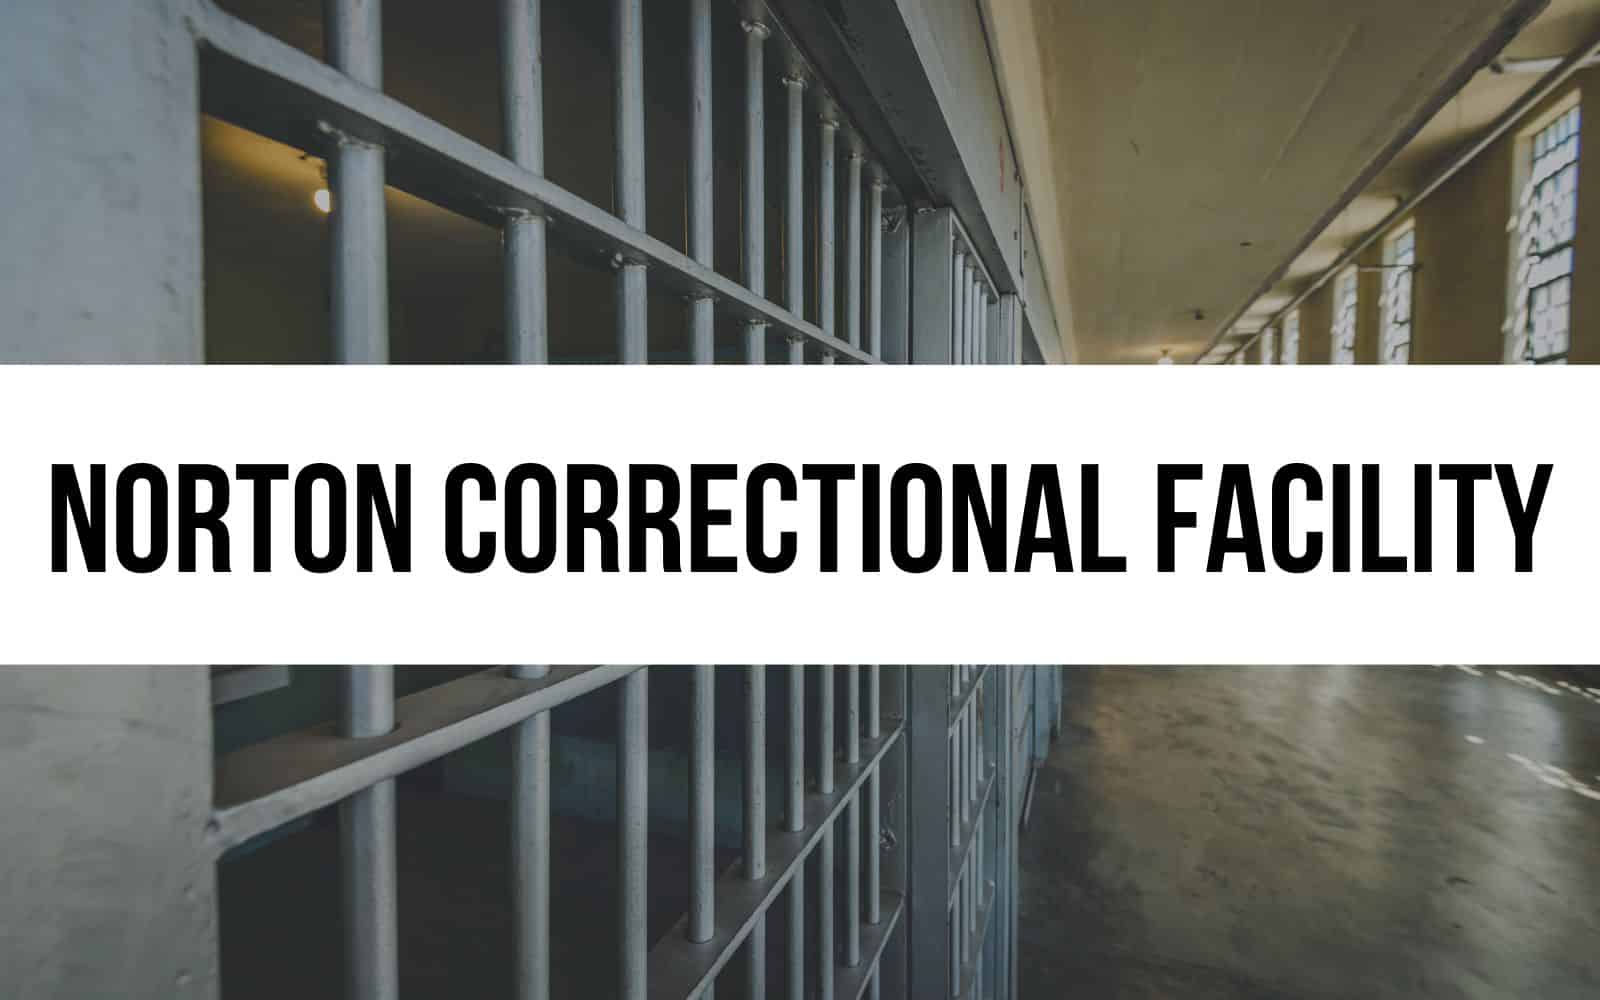 Norton Correctional Facility